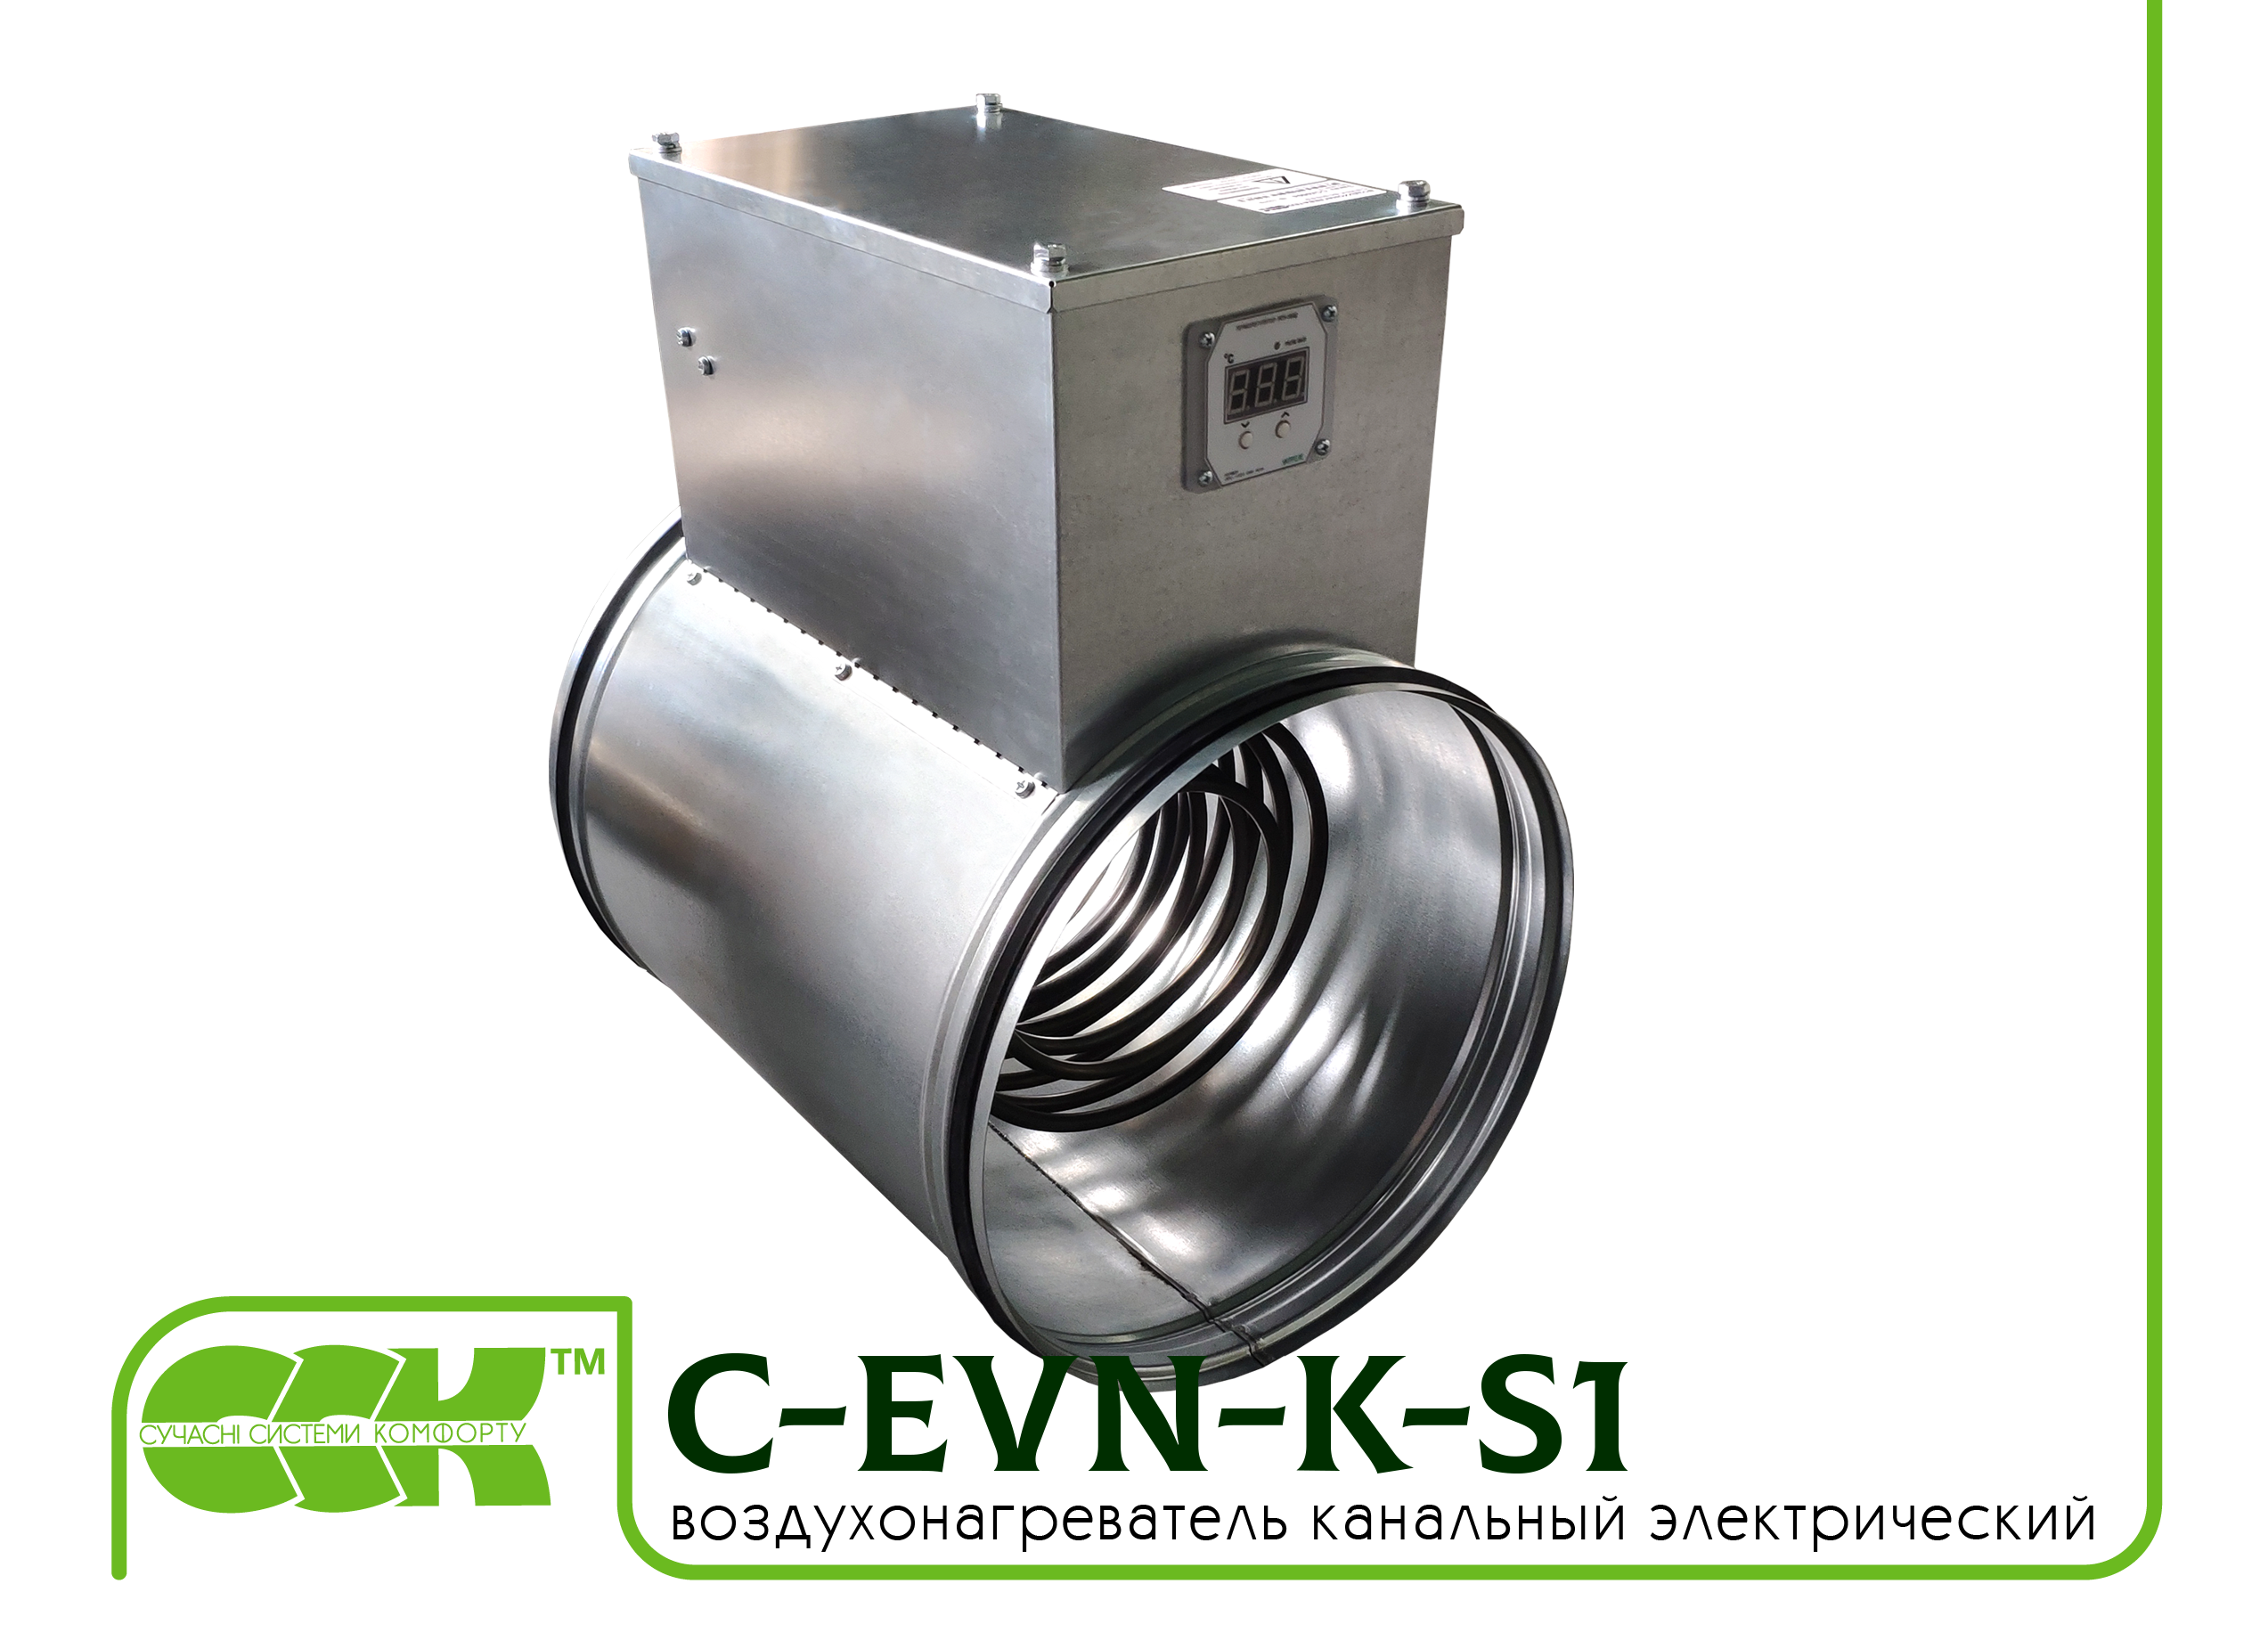 Воздухонагреватель канальный электрический для круглых каналов C-EVN-K-S1-150-1,5